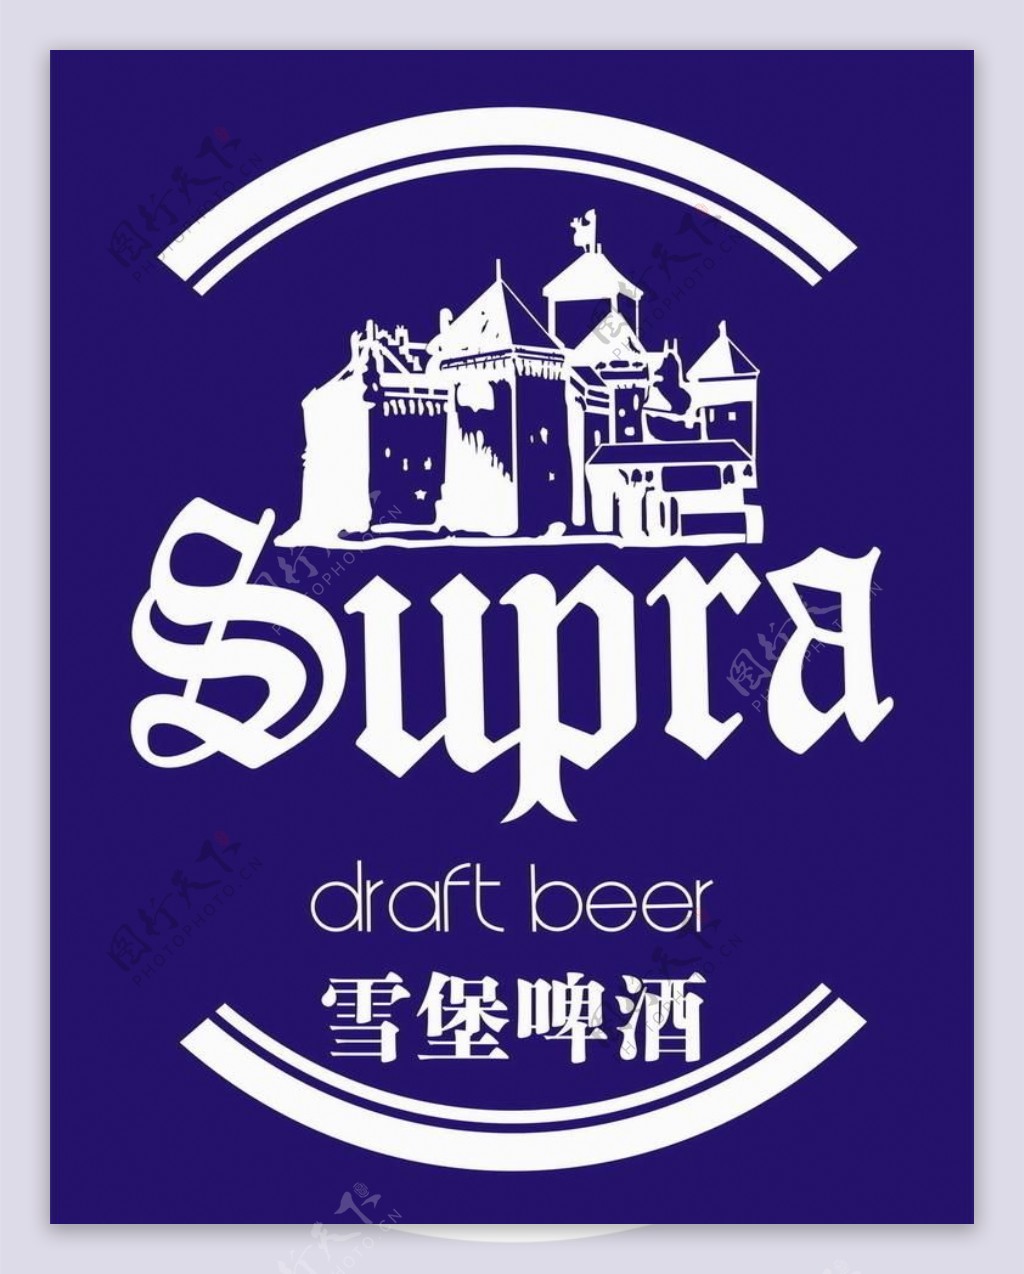 雪堡啤酒标志图片